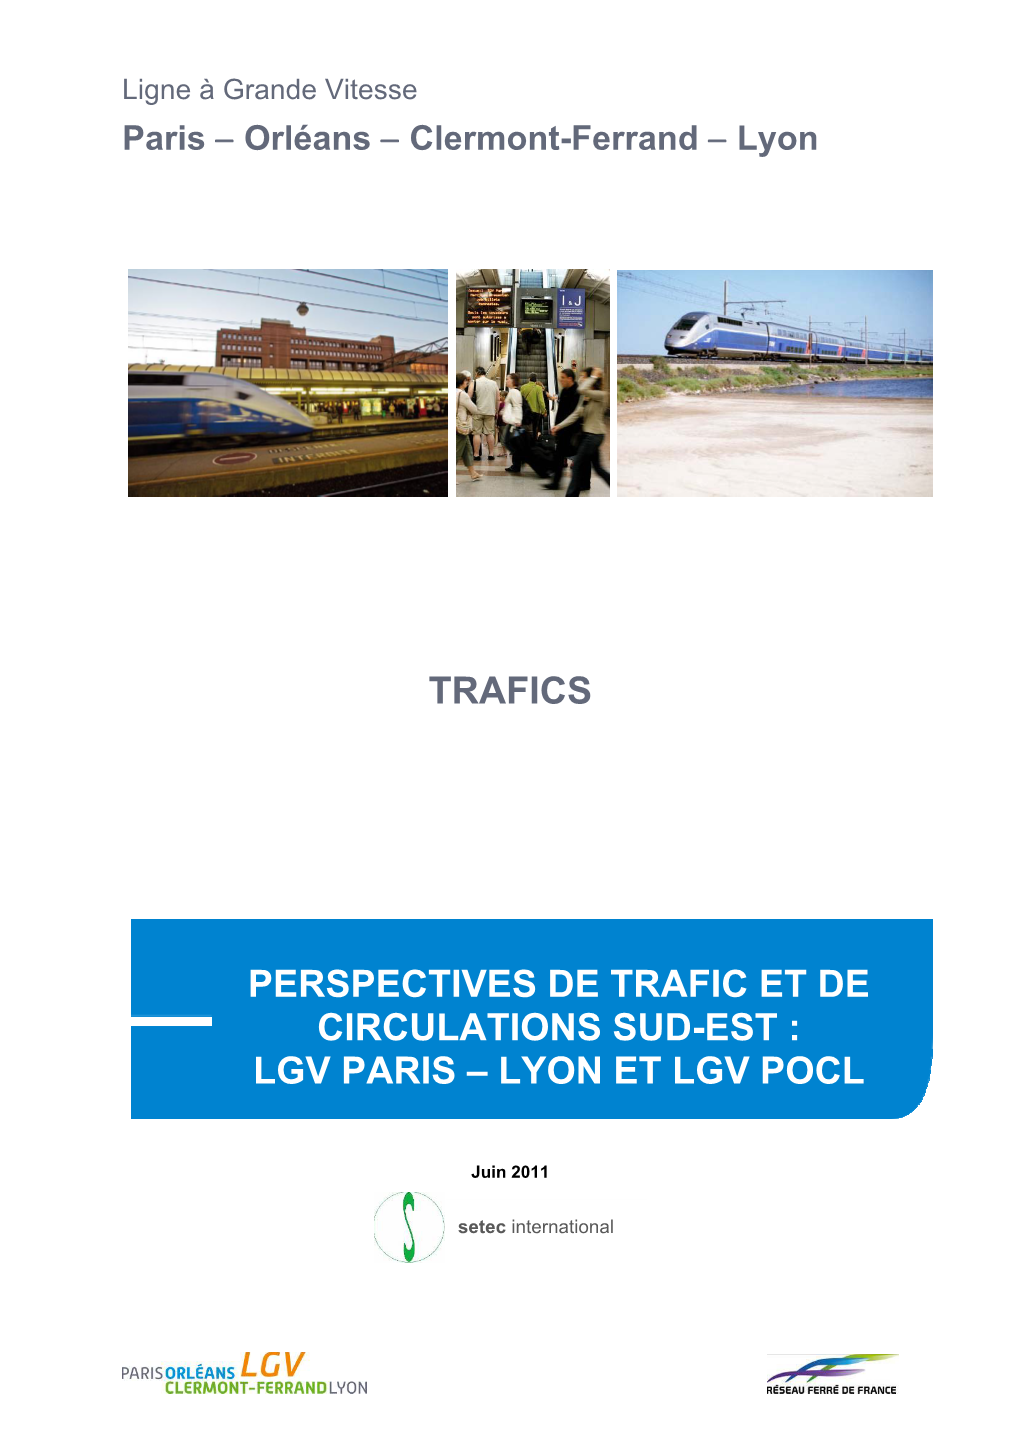 Perspectives De Trafic Et De Circulation Sud-Est : LGV Paris